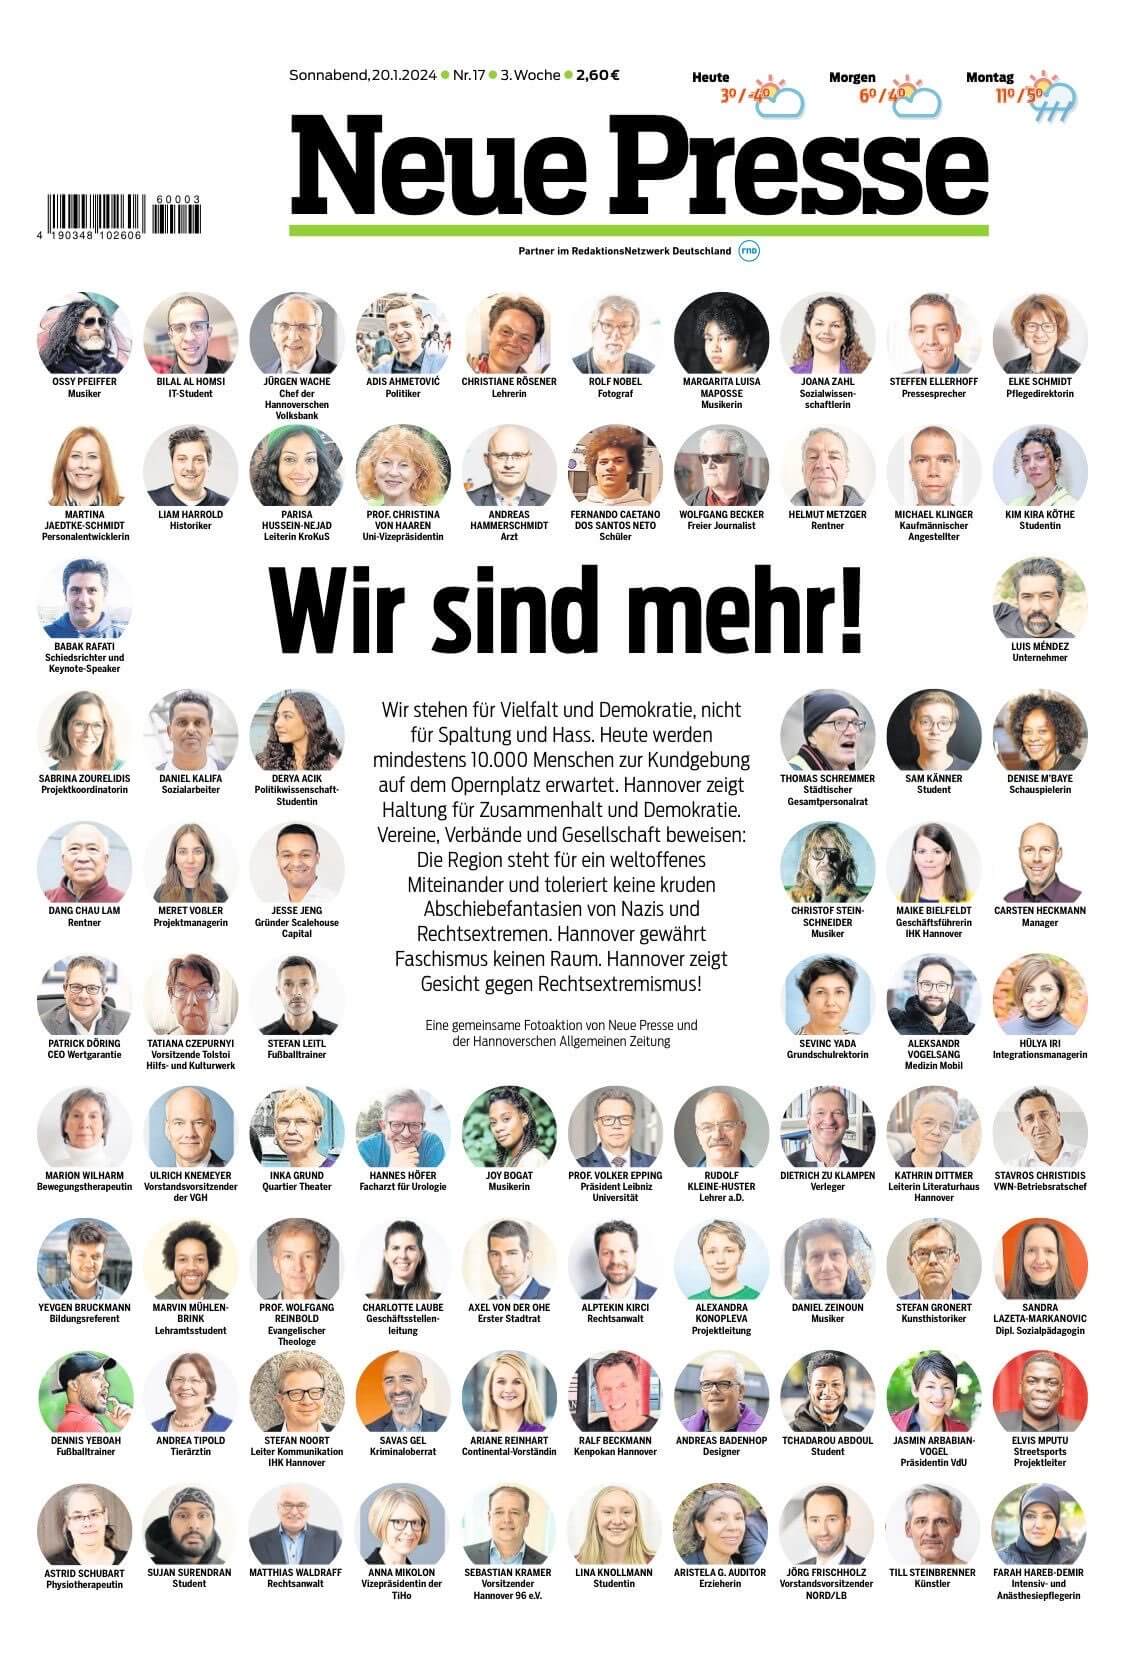 Titel der Hannover Prinzeitung Neue presse mit Köpfen von rund 50 Personen, die unter dem Aufruf „Wir sind mehr!“ die Demo gegen Rechts unterstützen